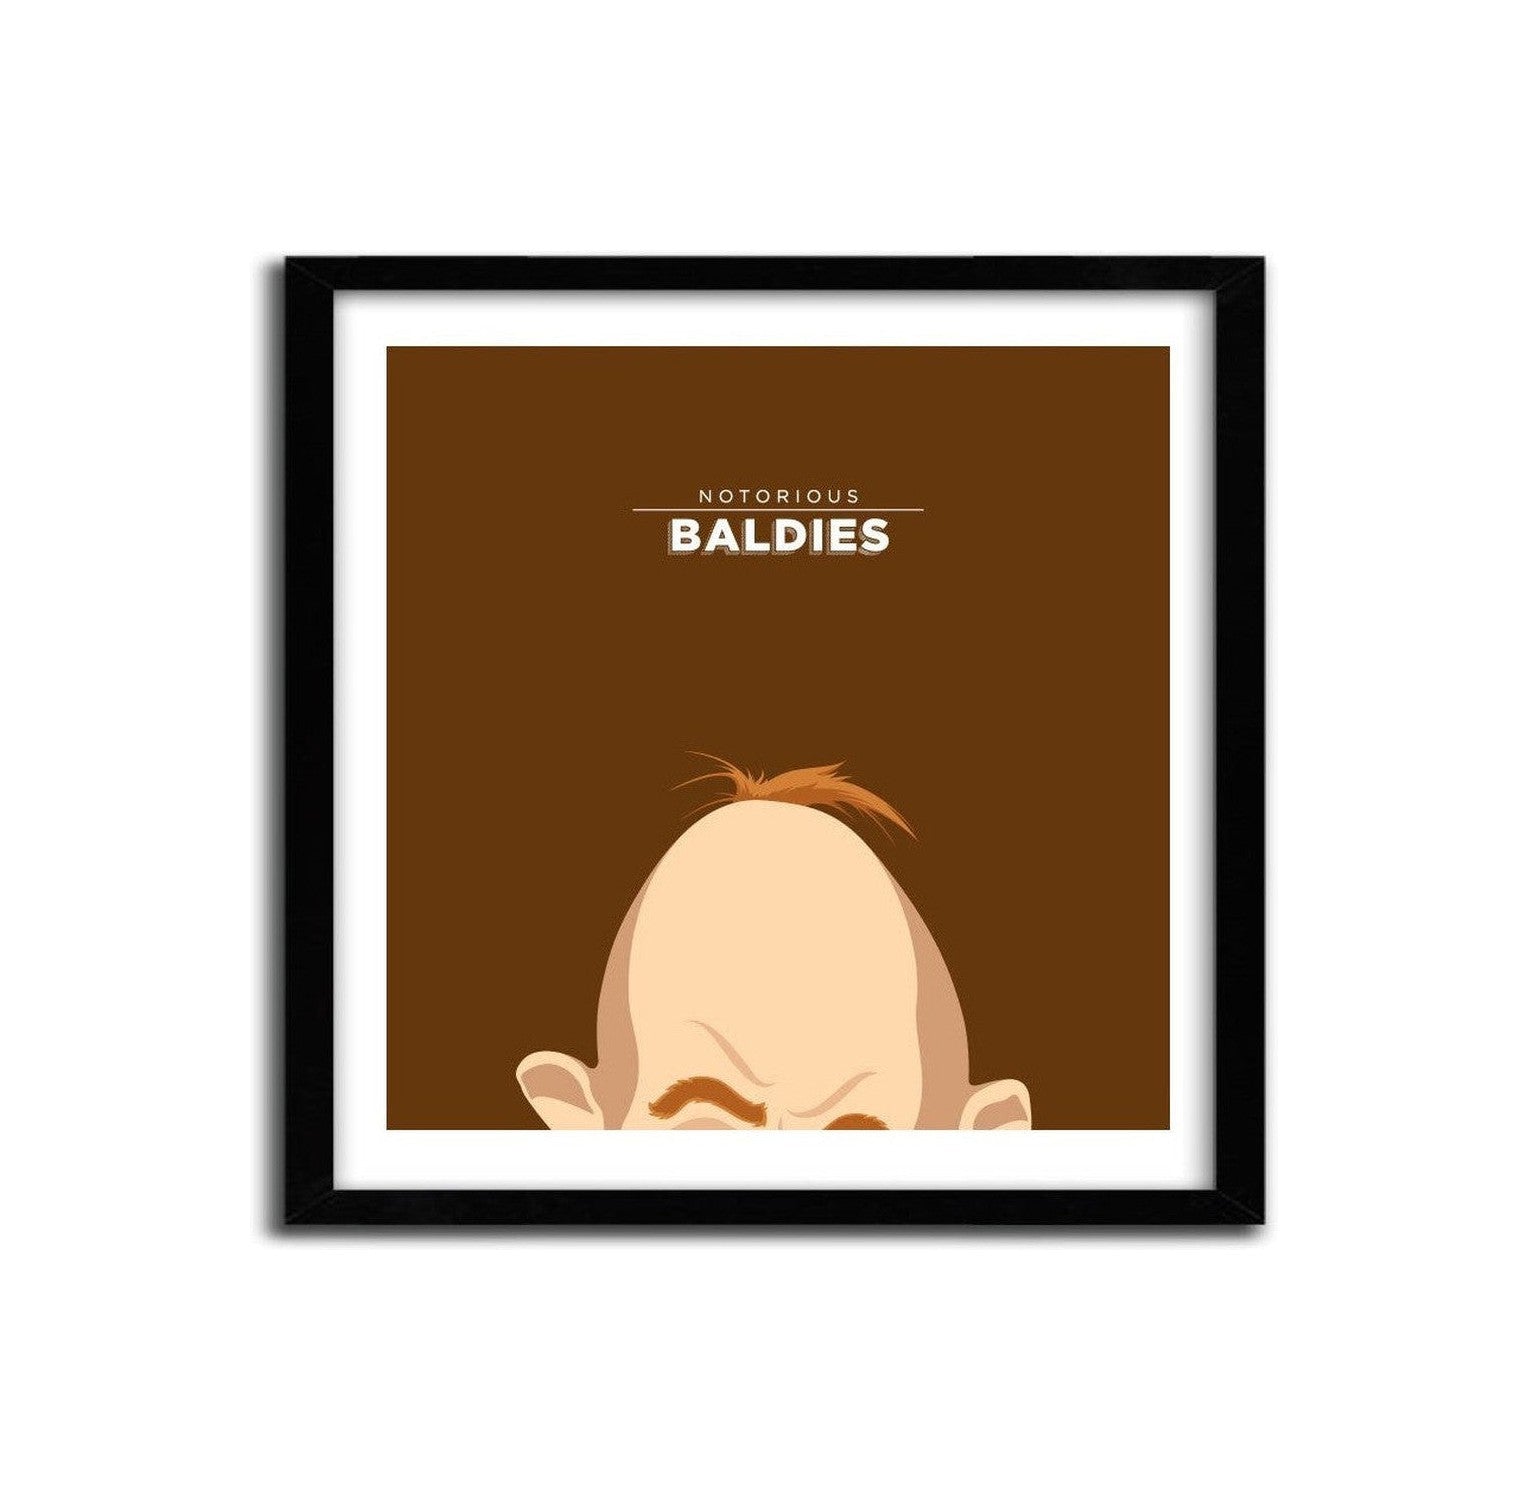 Affiche Notorious Baldie Sloth - The Goonies van de heer Peruca